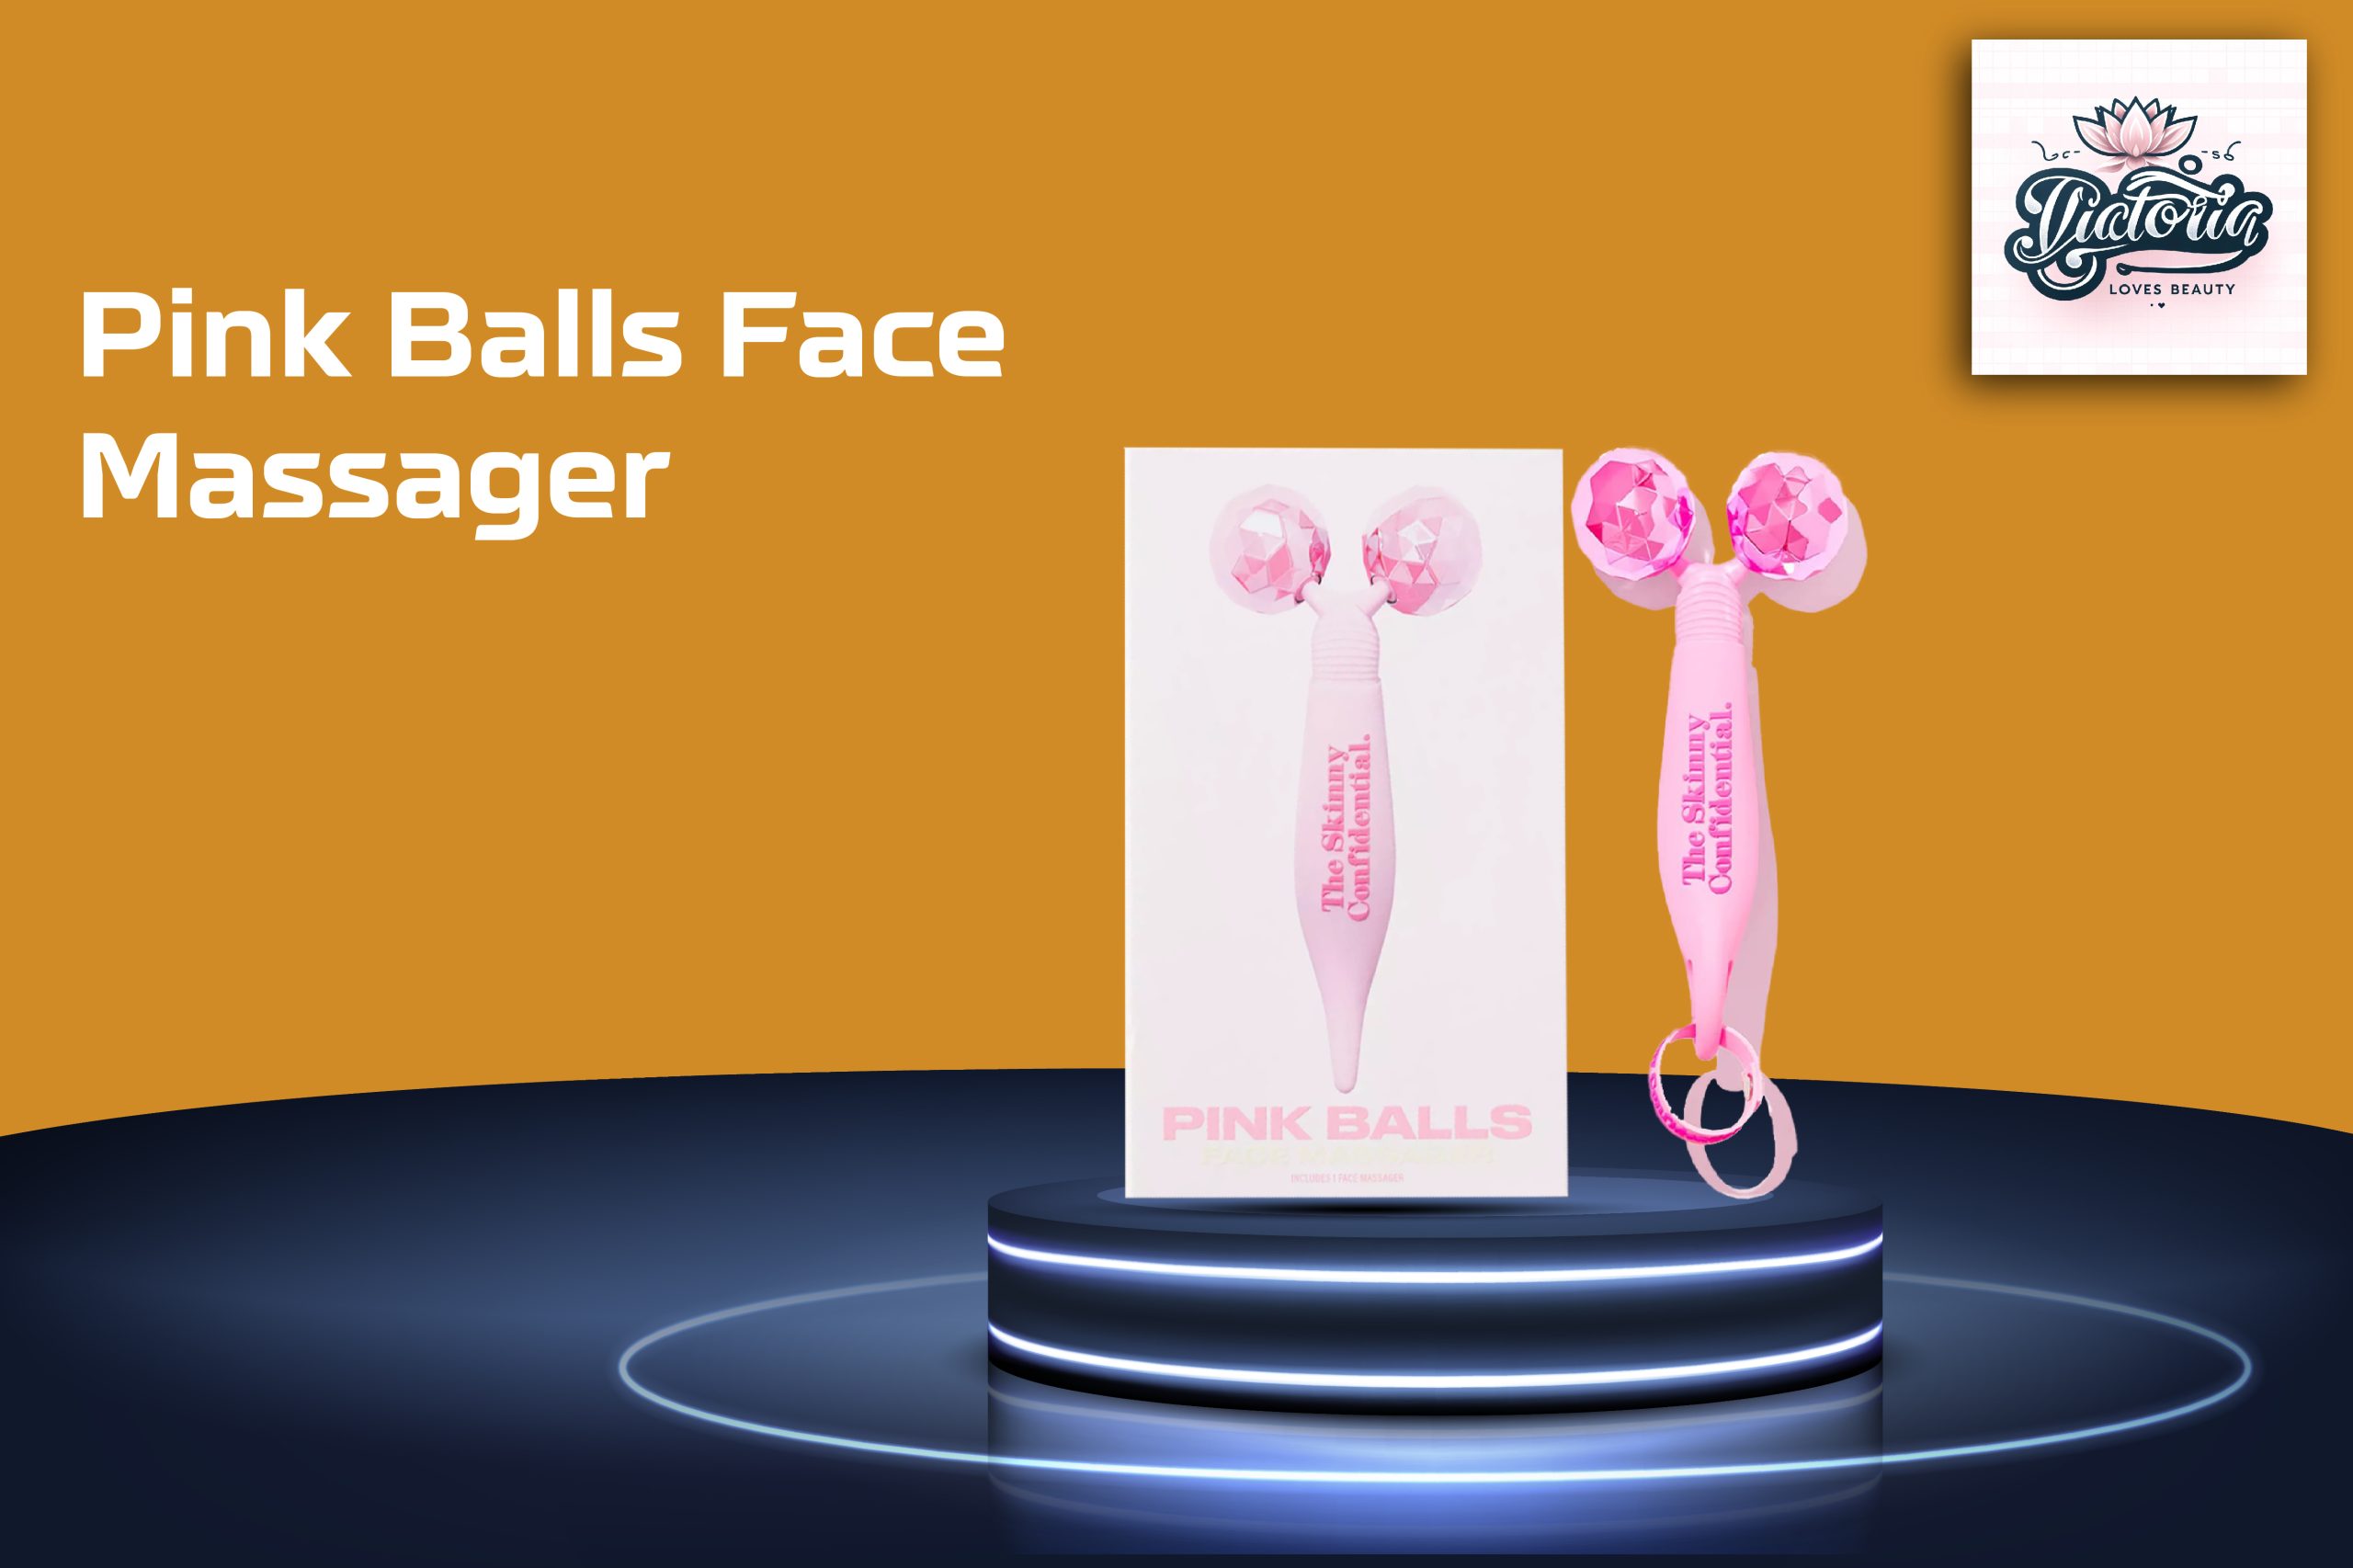 Pink Balls Face Massager Review